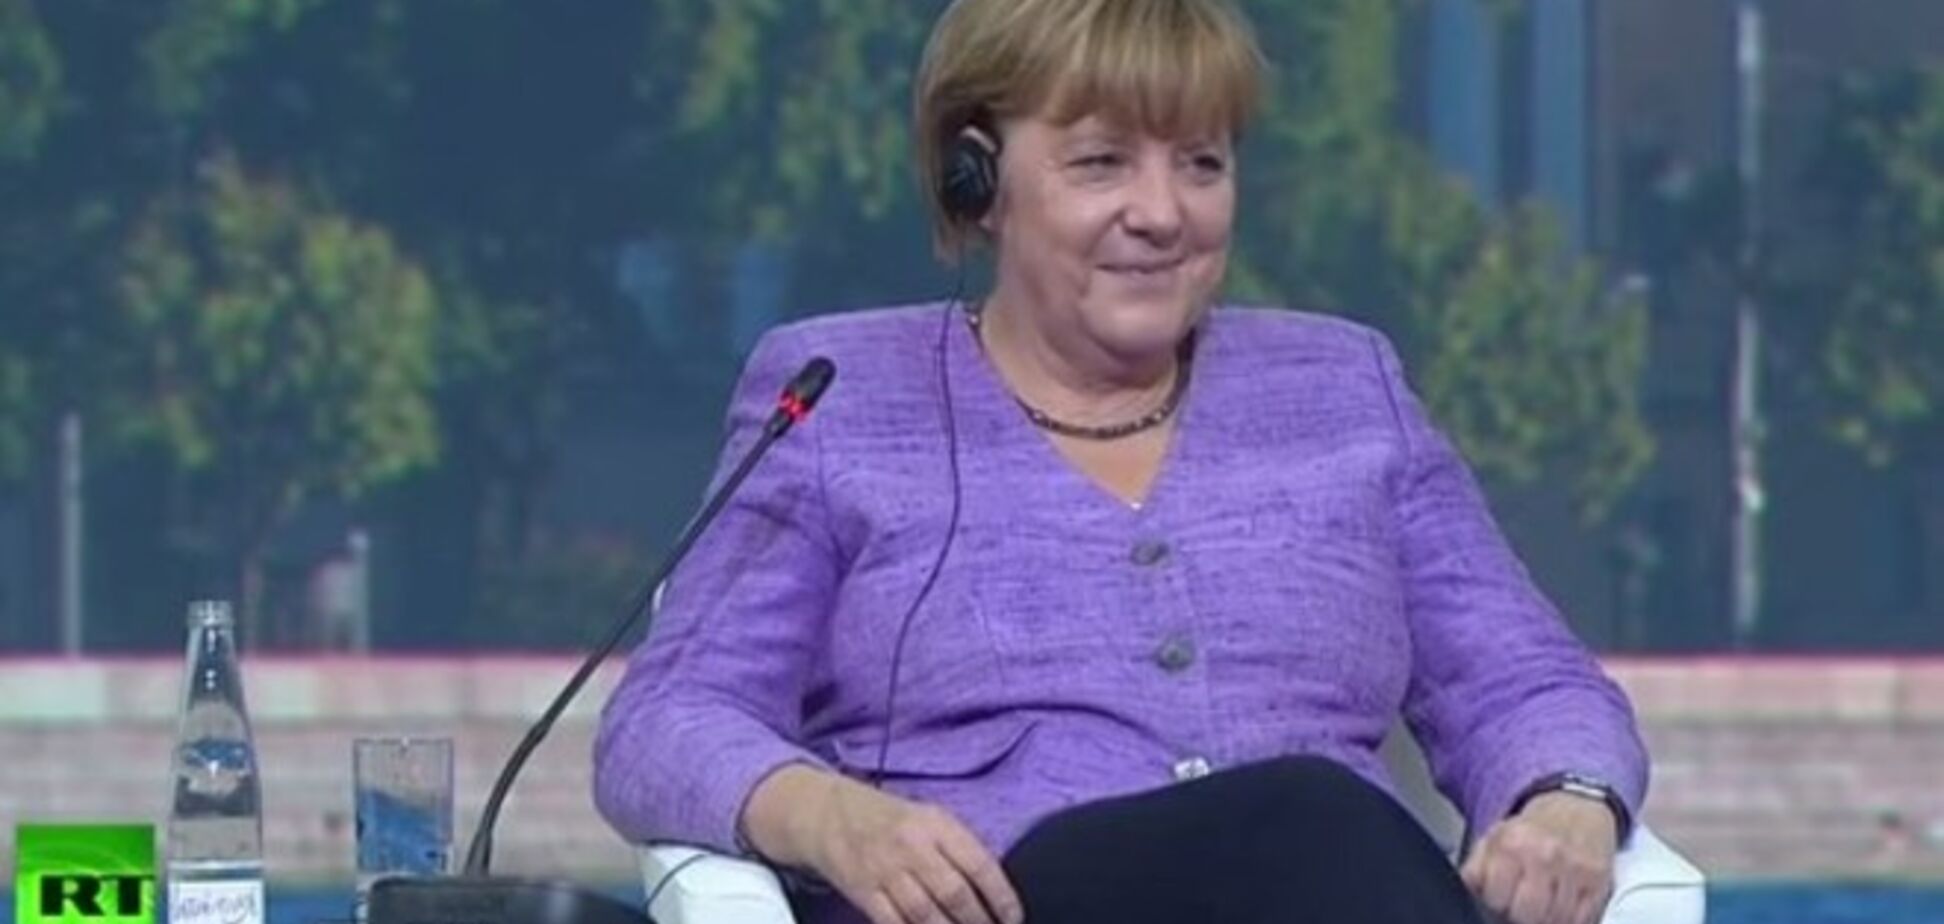 Видео взгляда Меркель в ответ на шутку Путина оказалось монтажом: канцлер одобрительно улыбалась